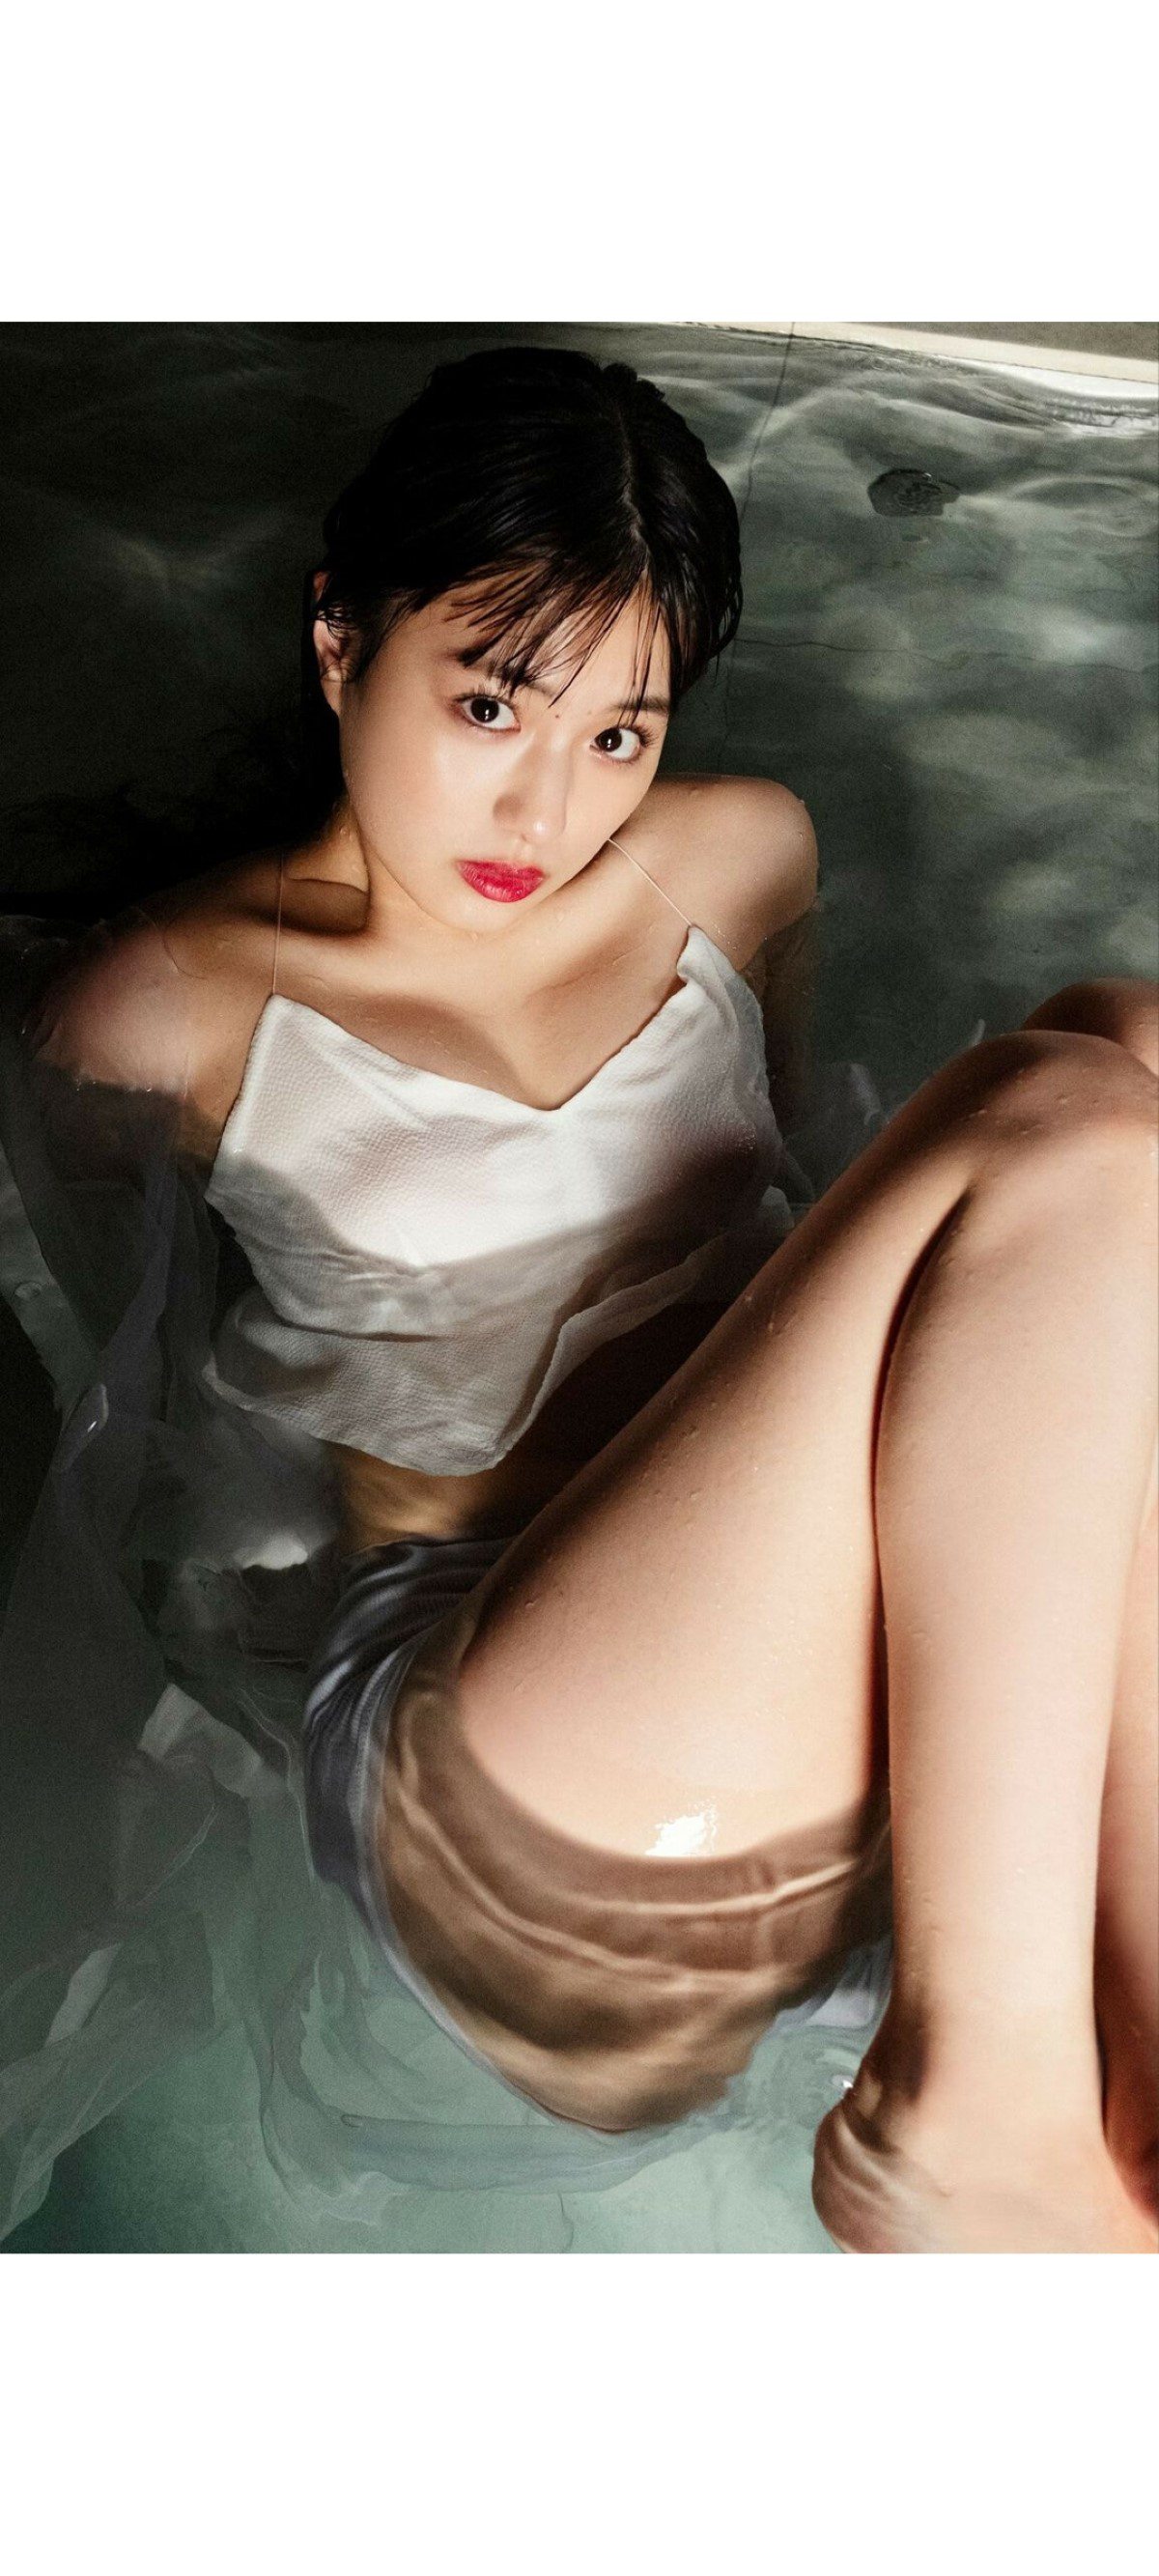 Weekly Photobook 2020 12 07 Noa Tsurushima 鶴嶋乃愛 A natural actress 生まれながらにして女優 0065 8003075397.jpg